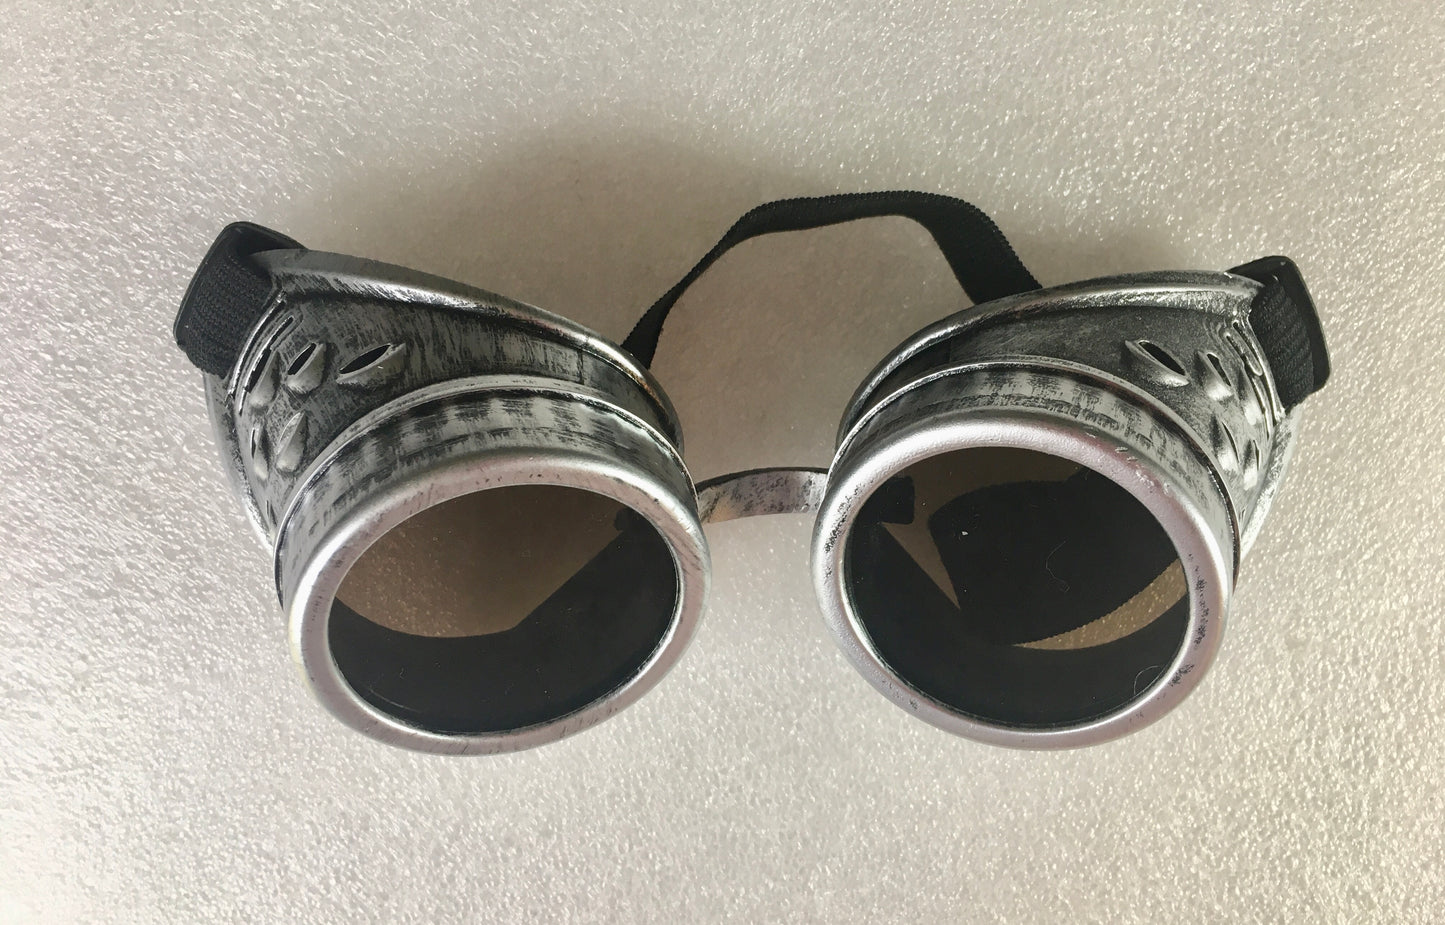 Steampunk goggles ($15 each)